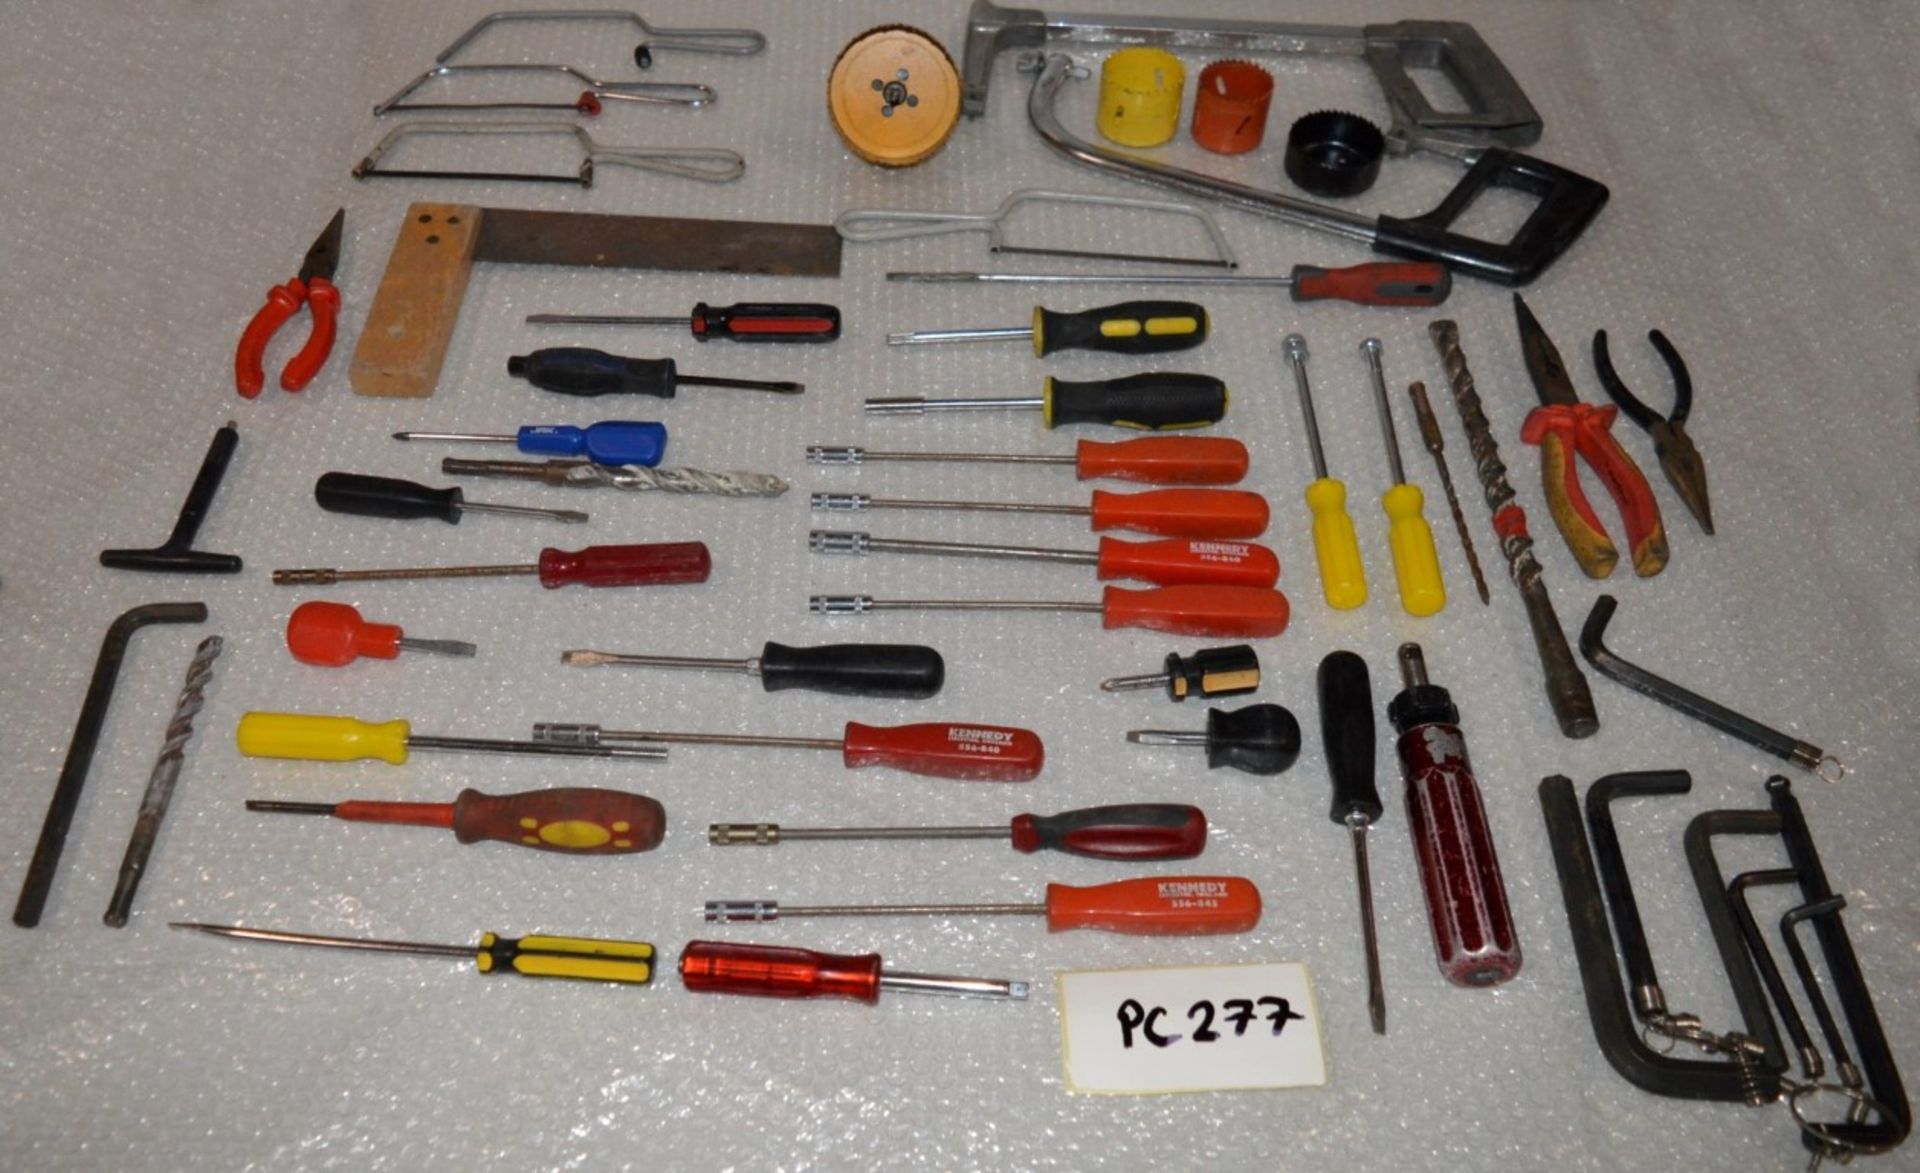 54 x Various Hand Tools Iincluding Screwdrivers, Saws, Bores, Drill Bits, Allen Keys, Hex Head Screw